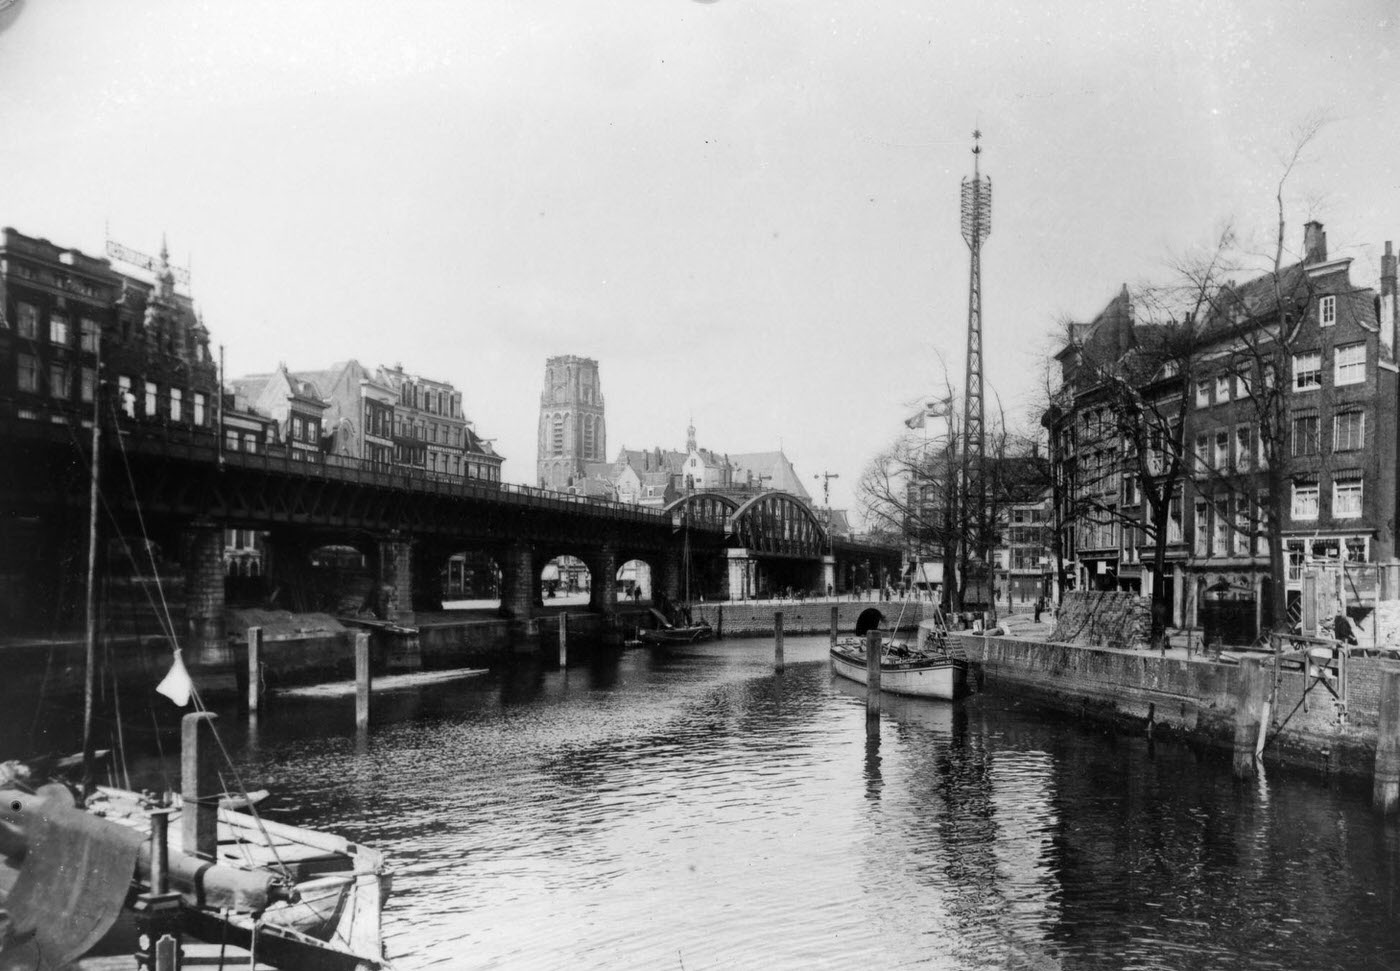 Rotterdam Canals, Netherlands, Cliche Abrahamson, 1900s